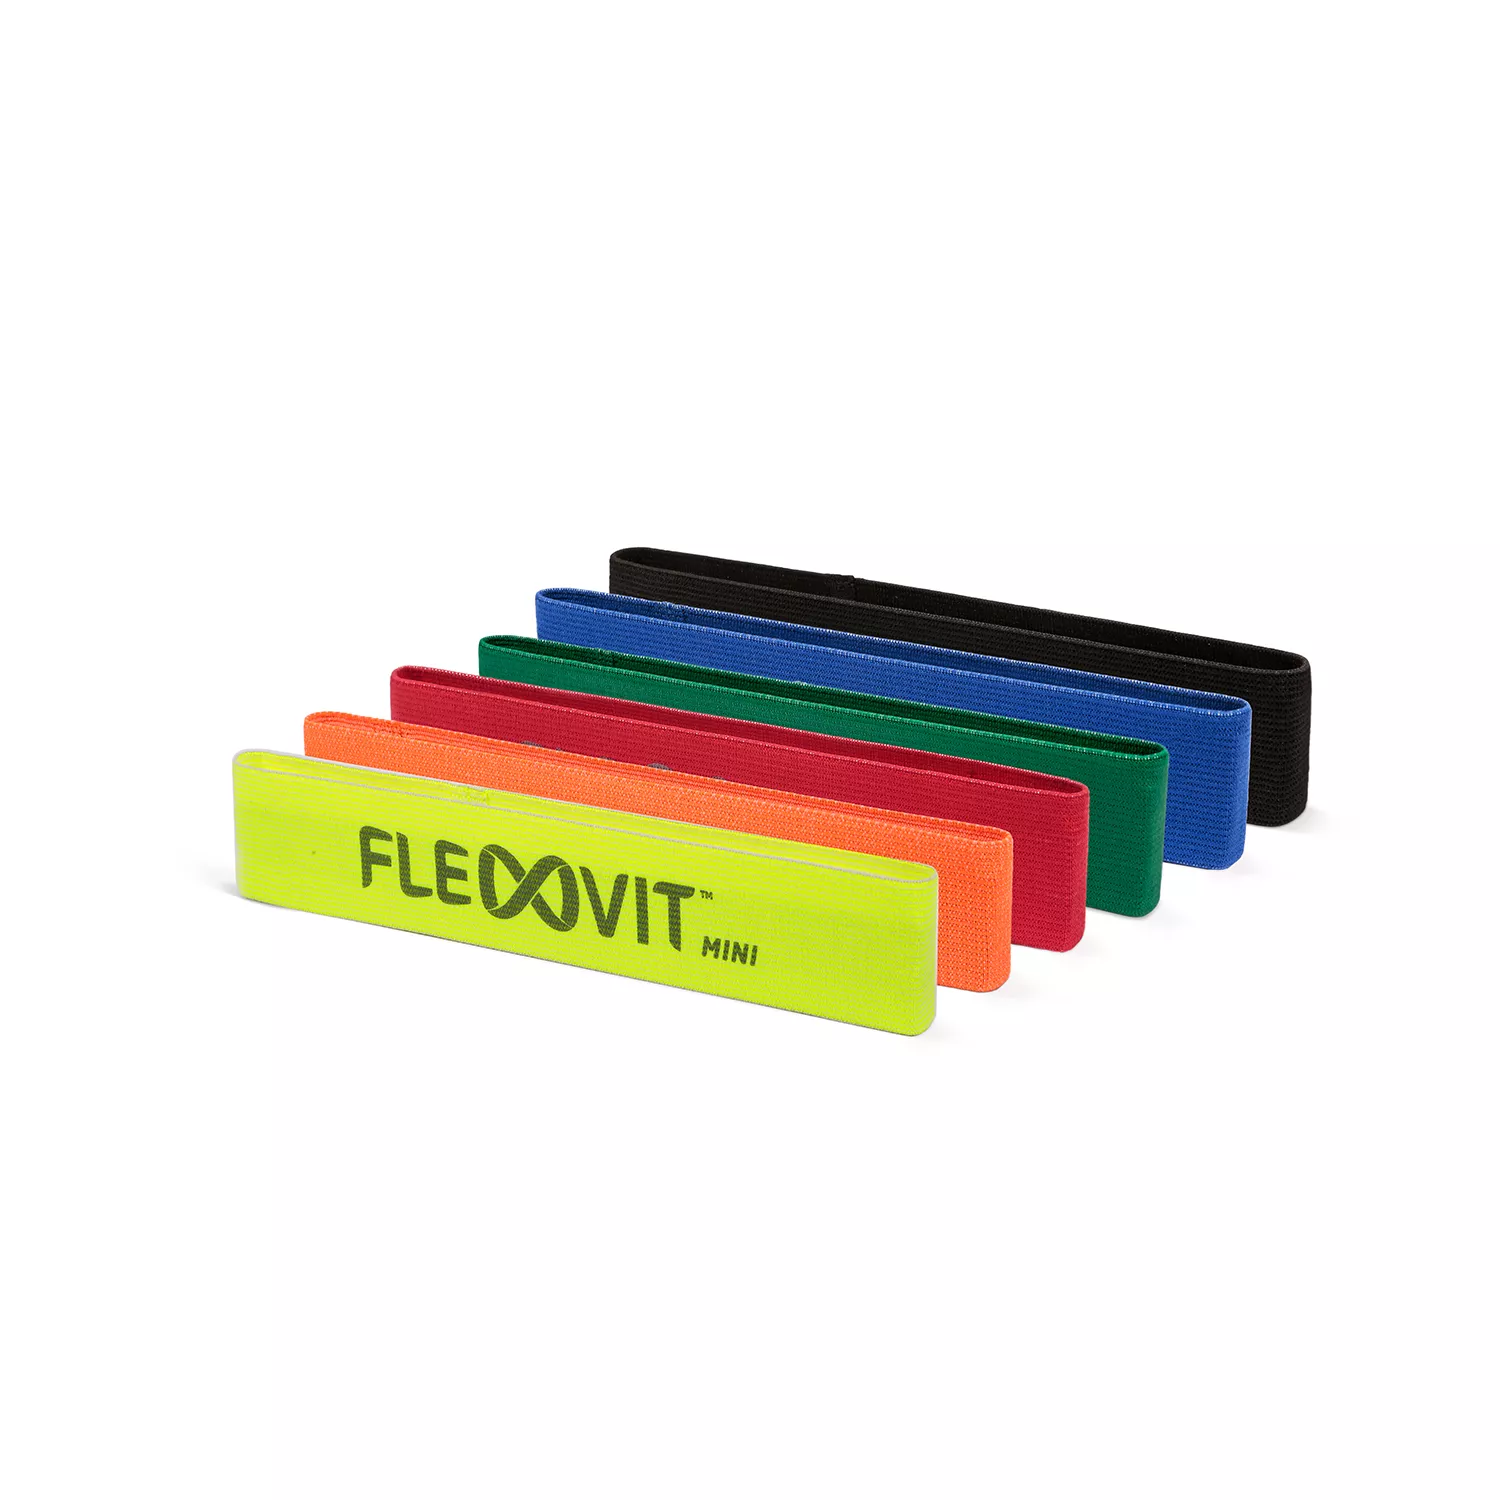 FLEXVIT fitnessband MINI set van 6 "all-in" voor opwarming, activering en revalidatie